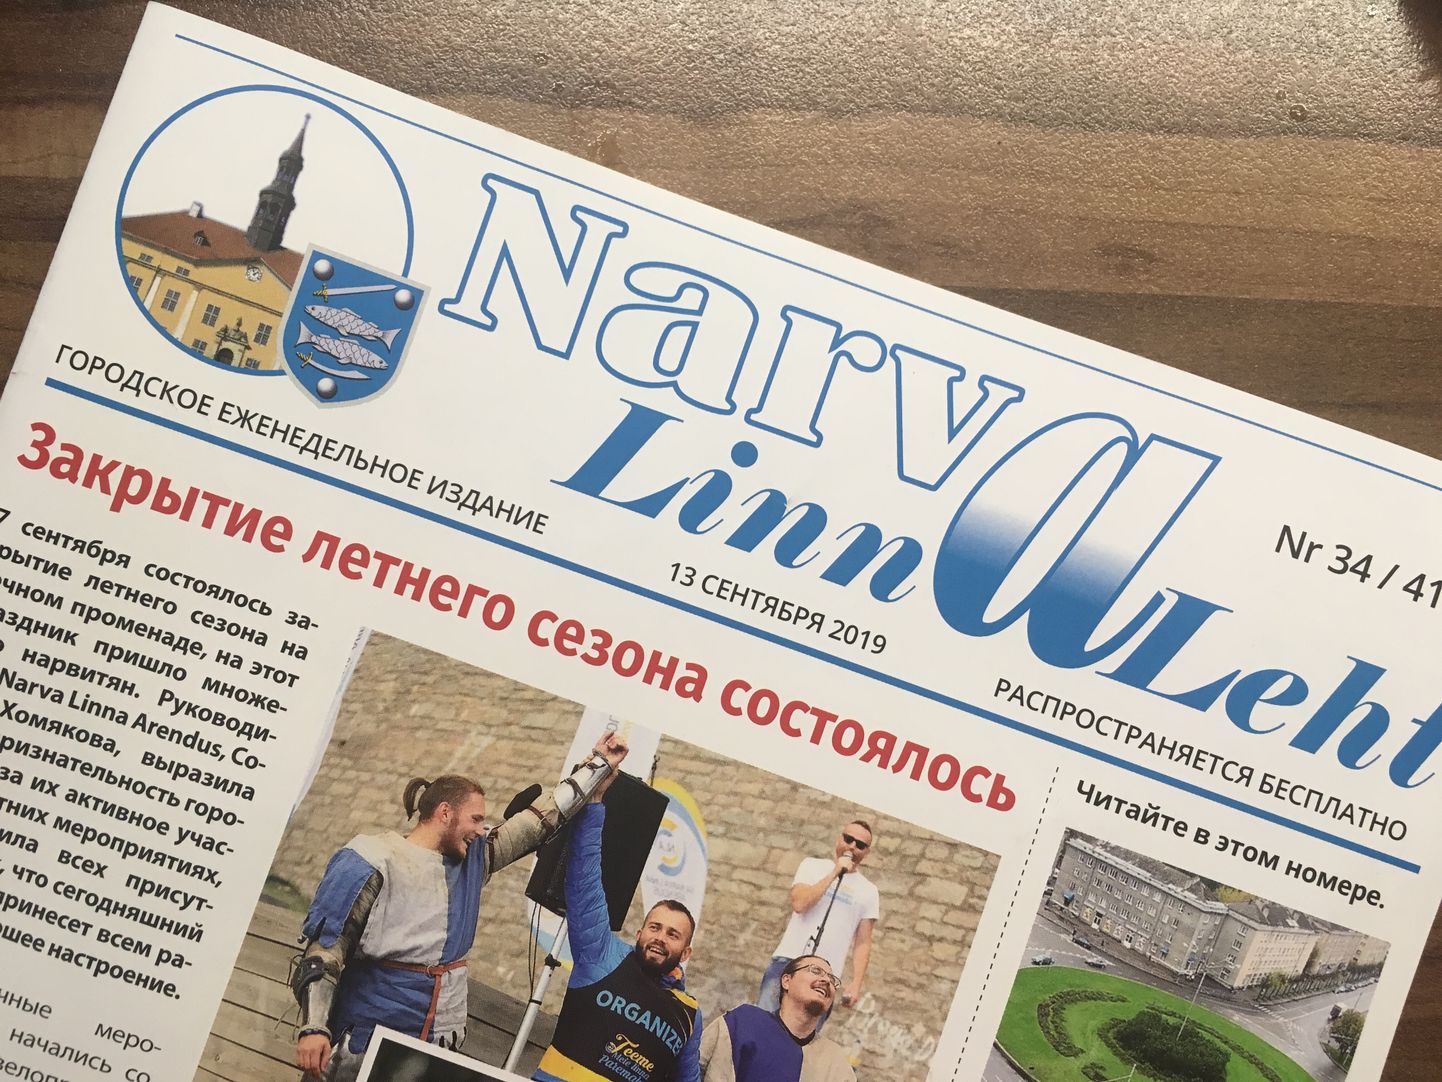 Фрагмент первой страницы еженедельника "Narva Linnaleht", призванного рассказывать о жизни и властях Нарвы без акцента на проблемах.